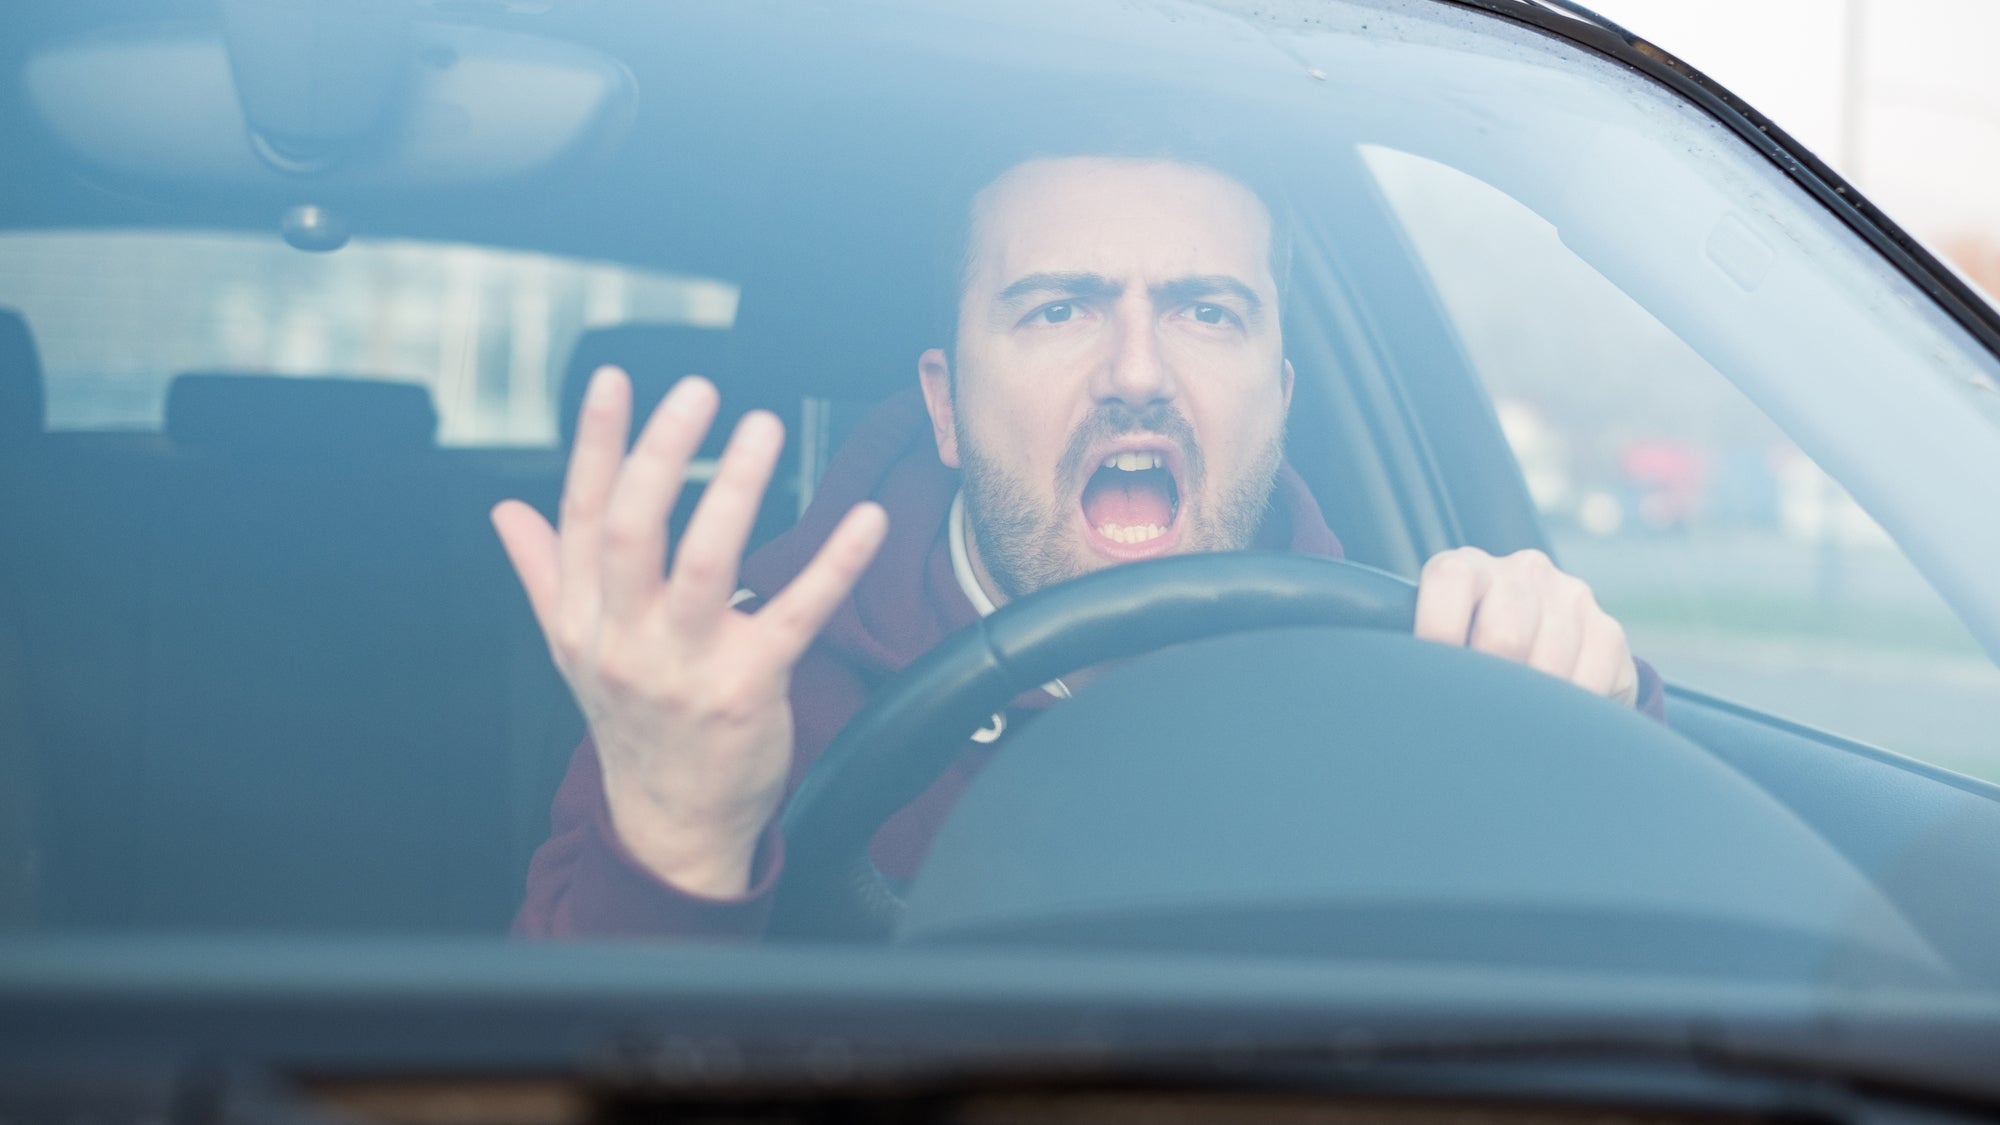 La furia al volante (y la envidia de los lugares de estacionamiento) pueden revelar mucho sobre cómo actúan los humanos